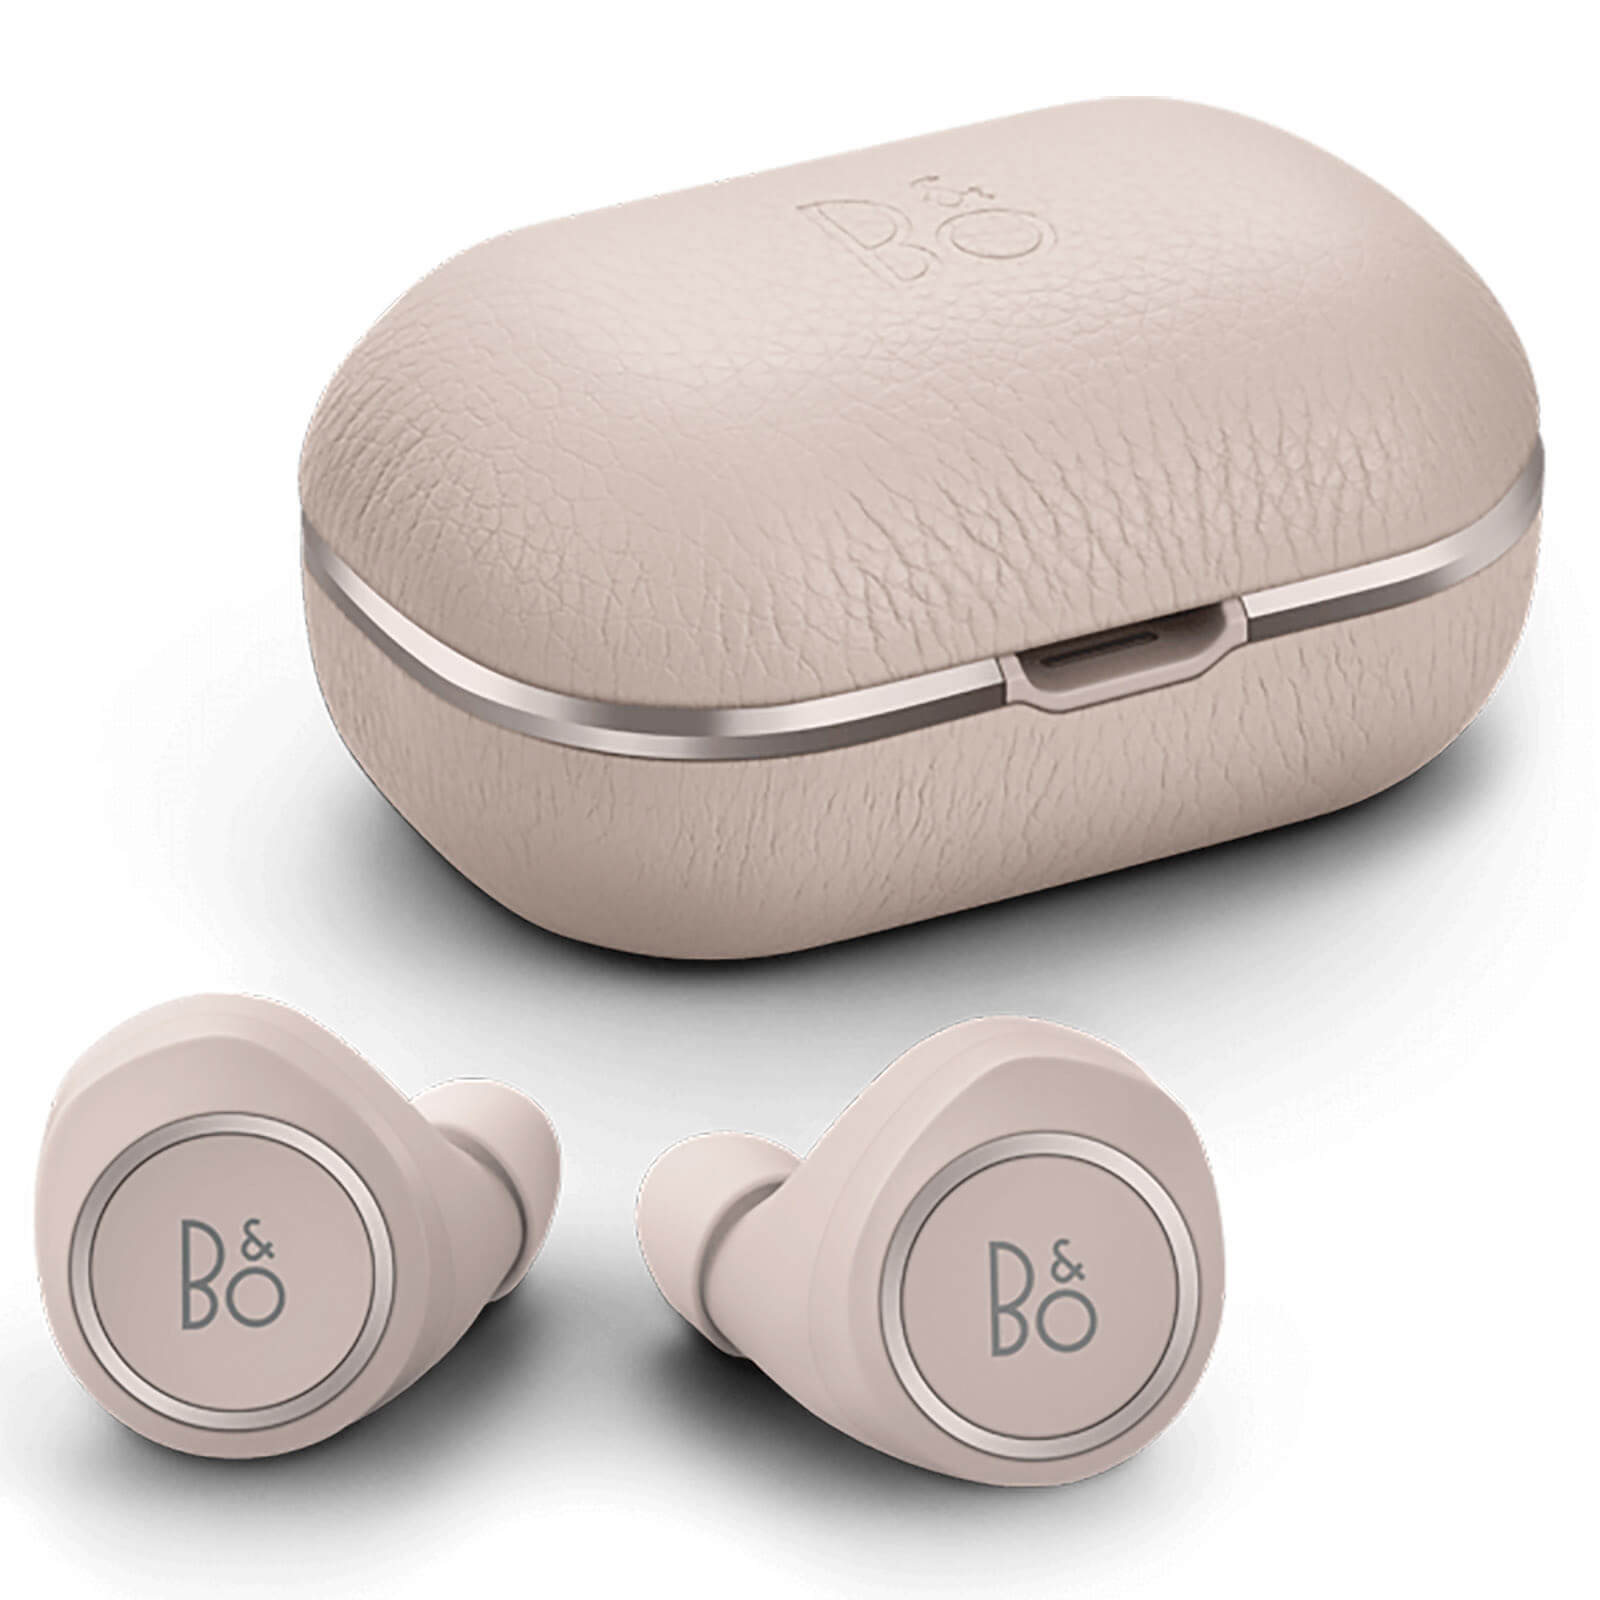 Bang & Olufsen BeoPlay E8 2.0 True Wireless Bluetooth In-Ear Headphones - Limestone